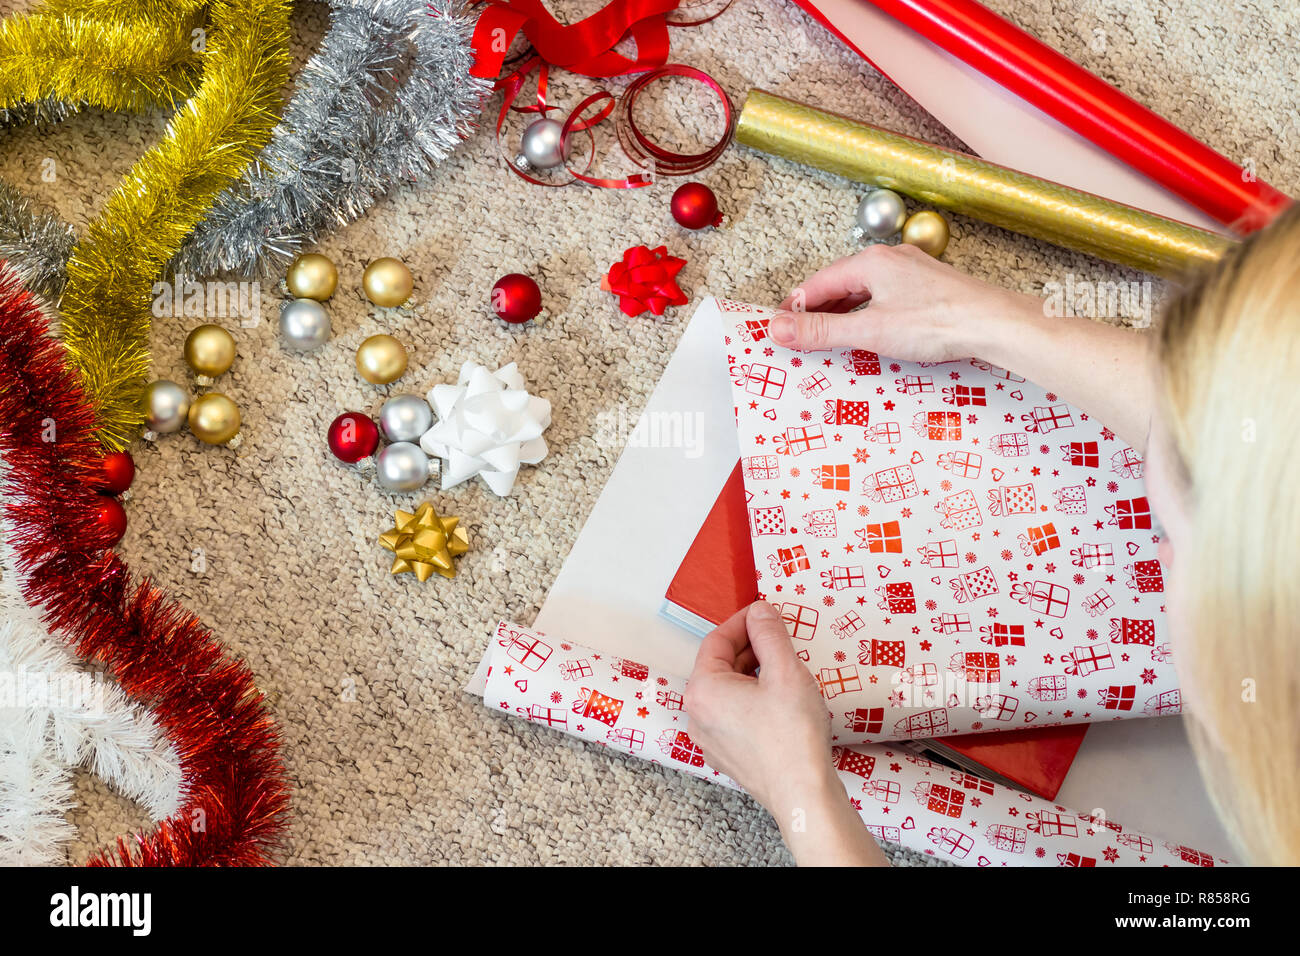 Woman wrapping Christmas present avec matériaux colorés Banque D'Images